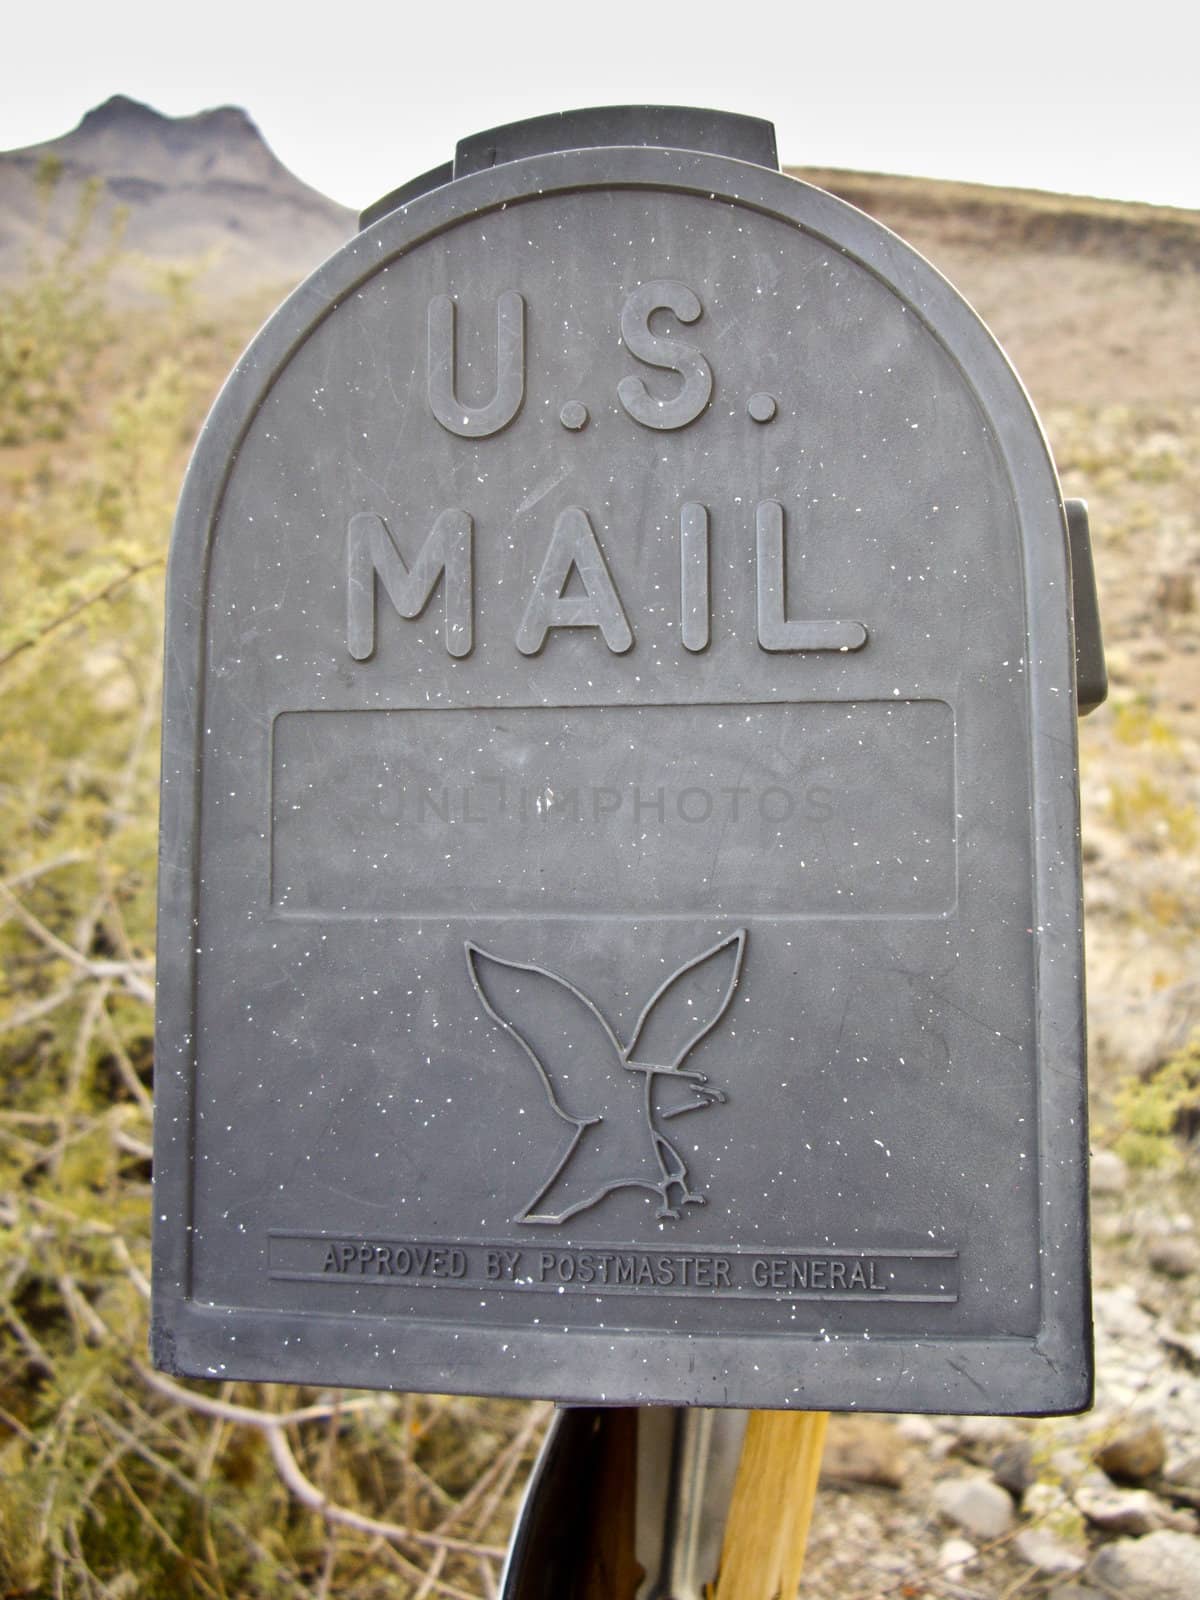 Mail Box in rural desert of Arizona USA